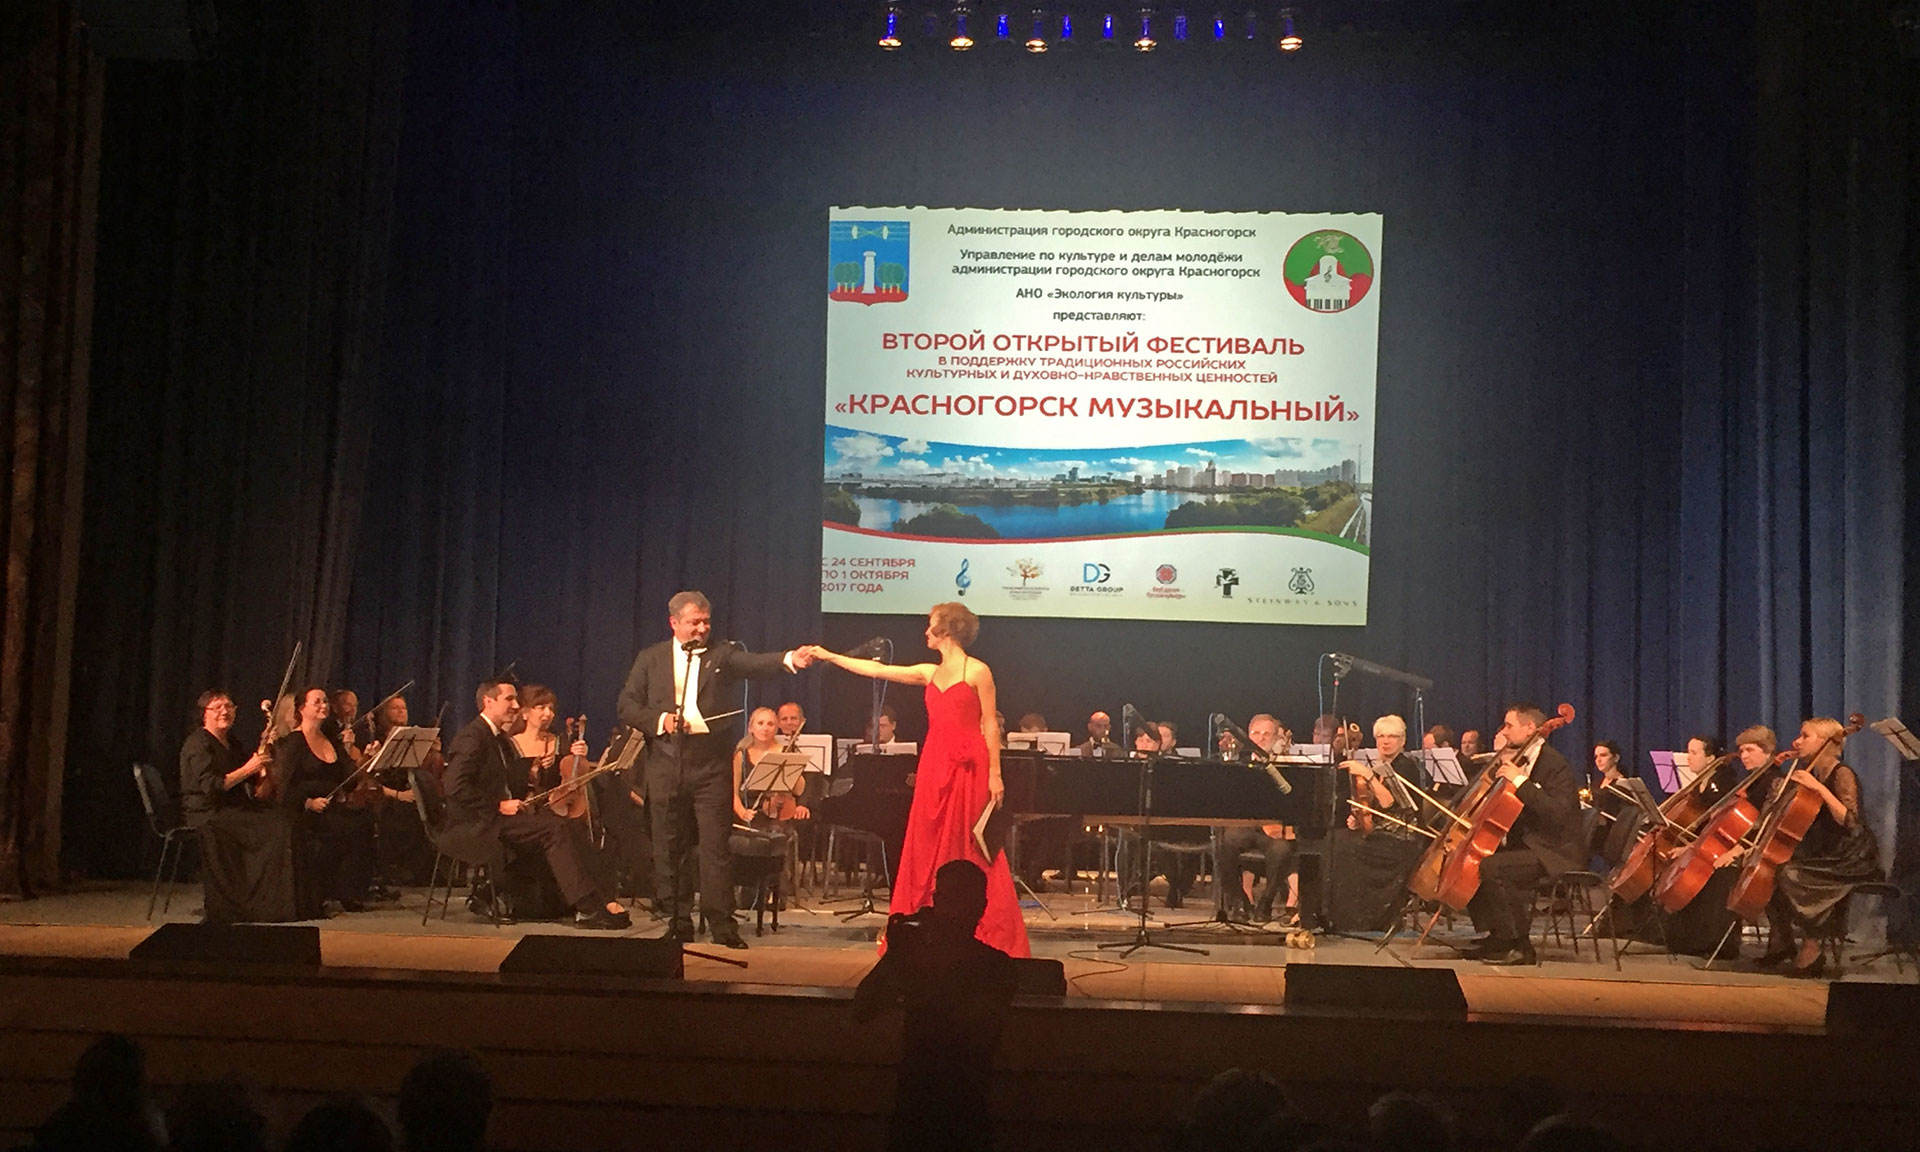 Брянский Губернаторский симфонический оркестр открыл фестиваль «Красногорск музыкальный»